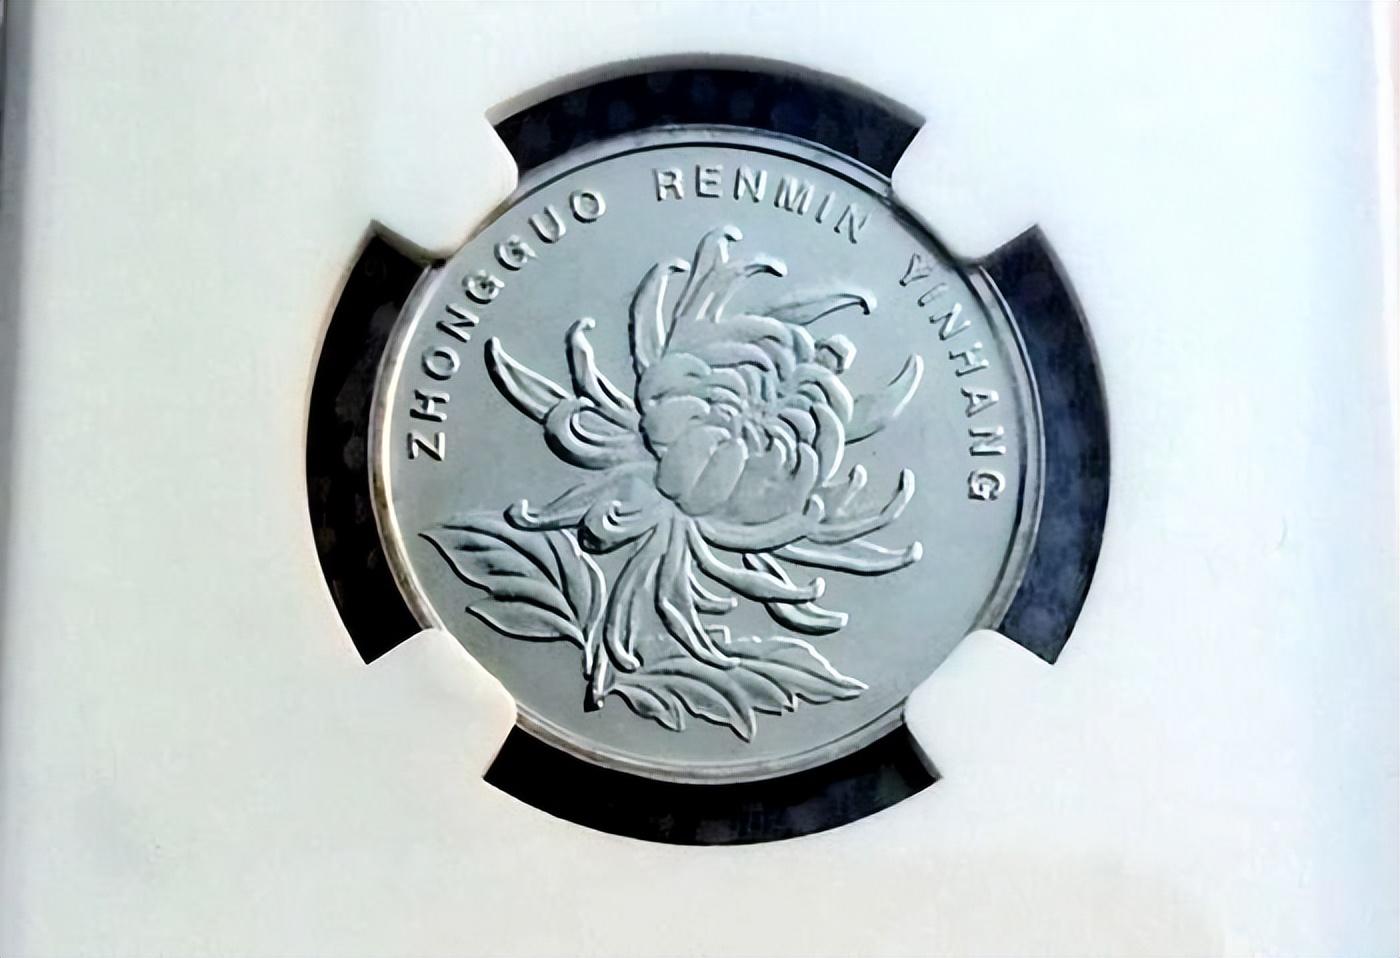 这枚硬币属于第四版人民币硬币系列中的新三花之一,这一系列硬币